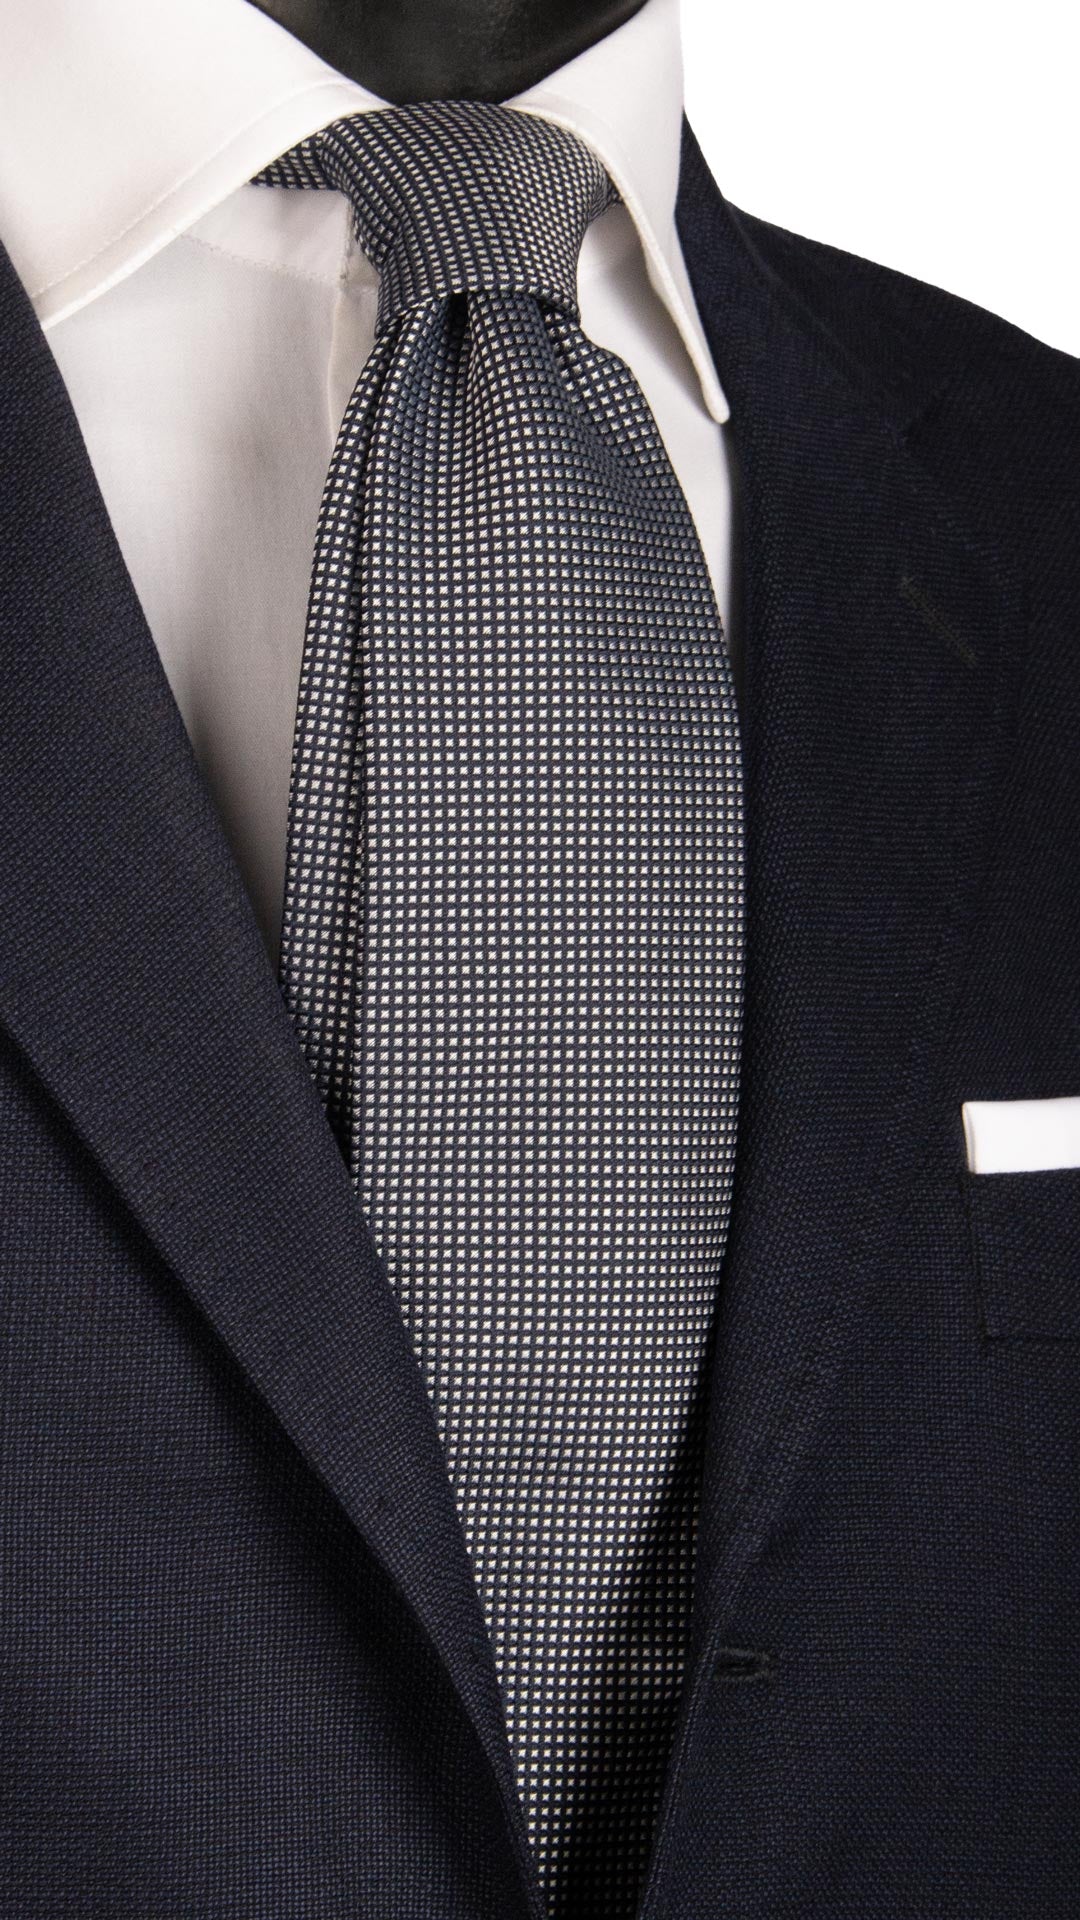 Cravatta da Cerimonia di Seta Blu Grigia Argento CY6620 Made in Italy Graffeo Cravatte